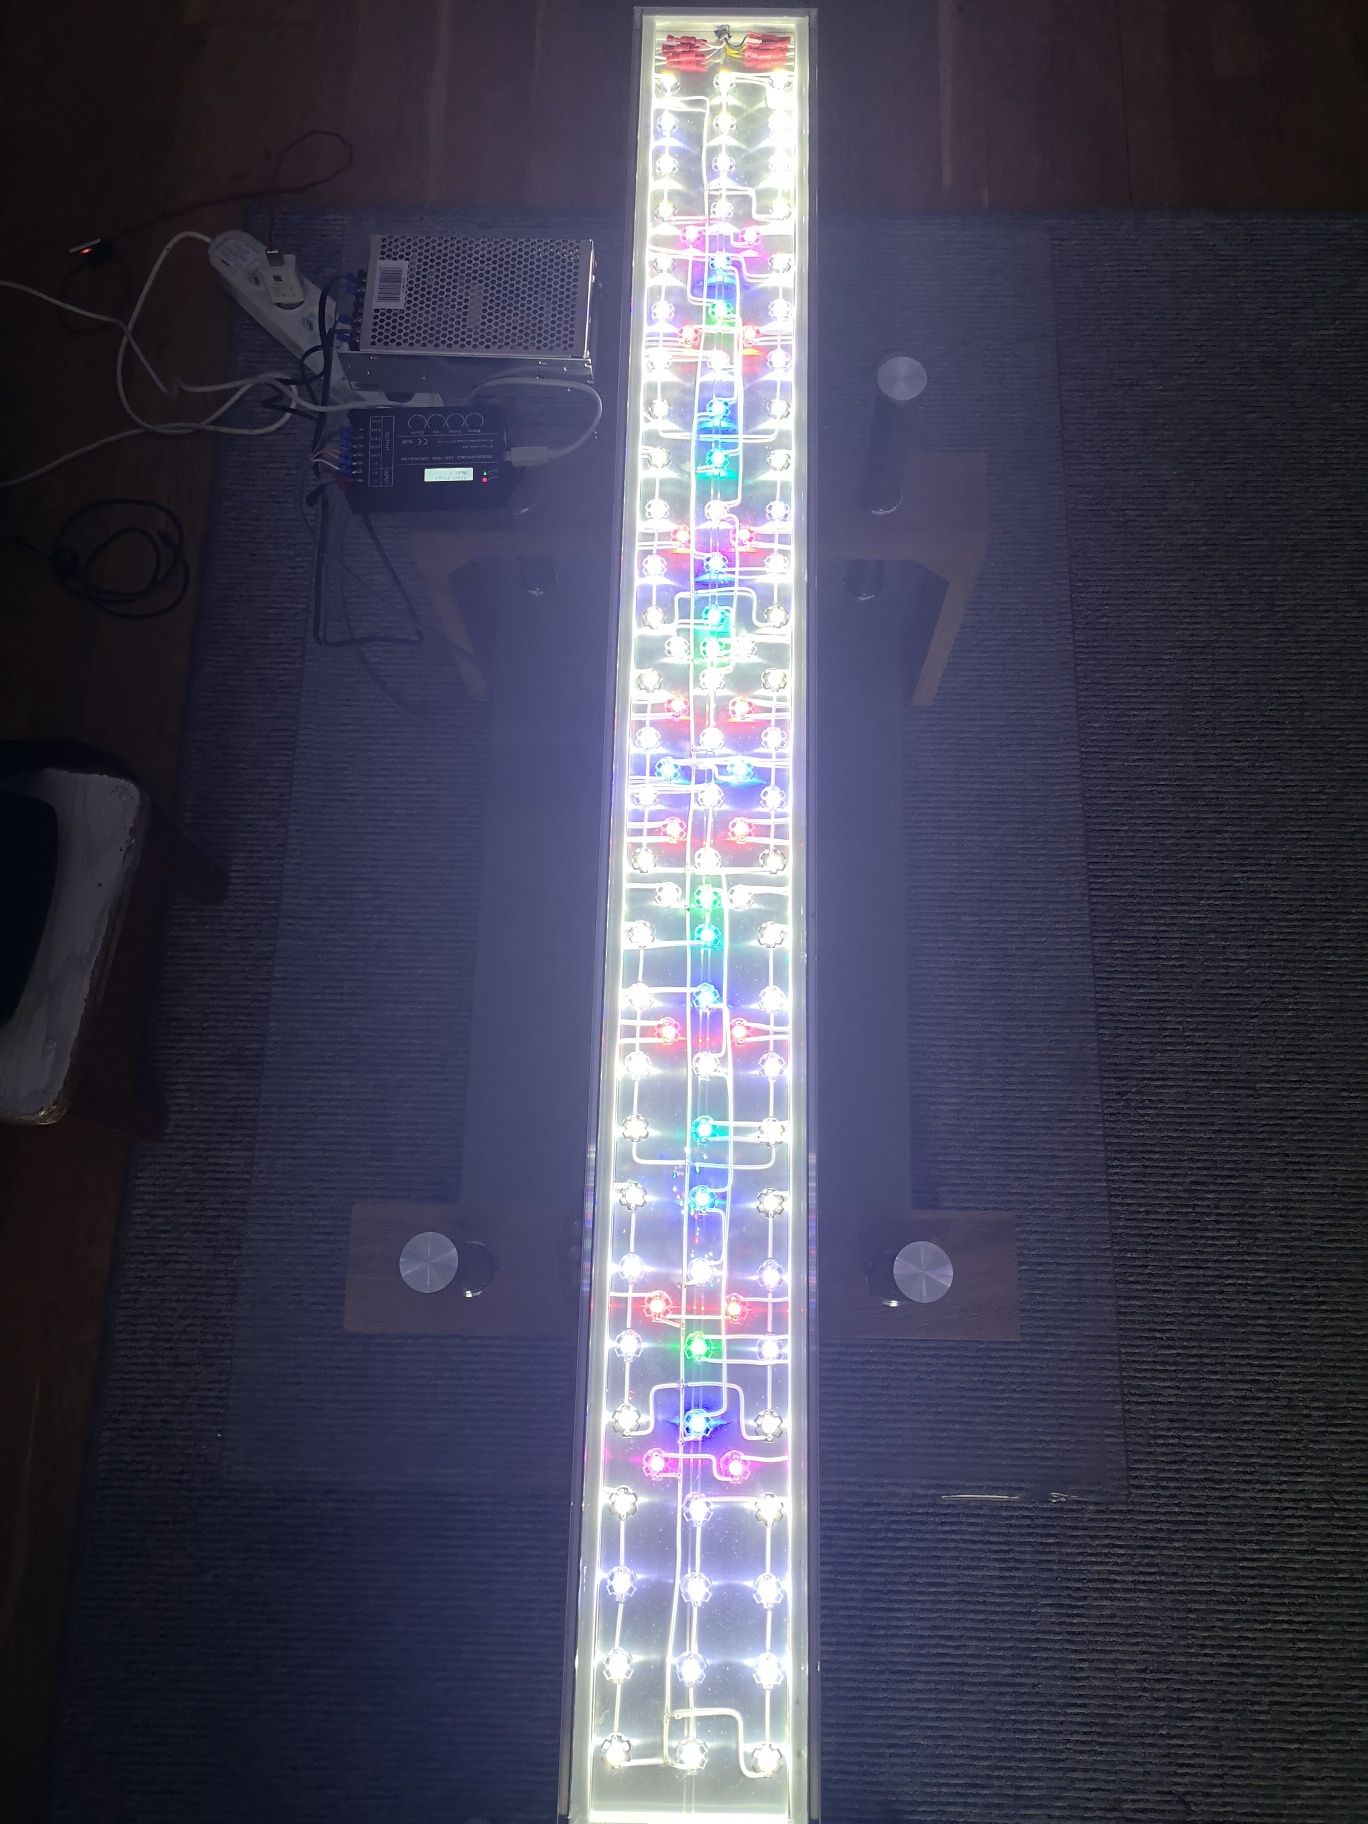 Belka LED sterownik TC420 zmierzch-świt, nocne oświetlenie